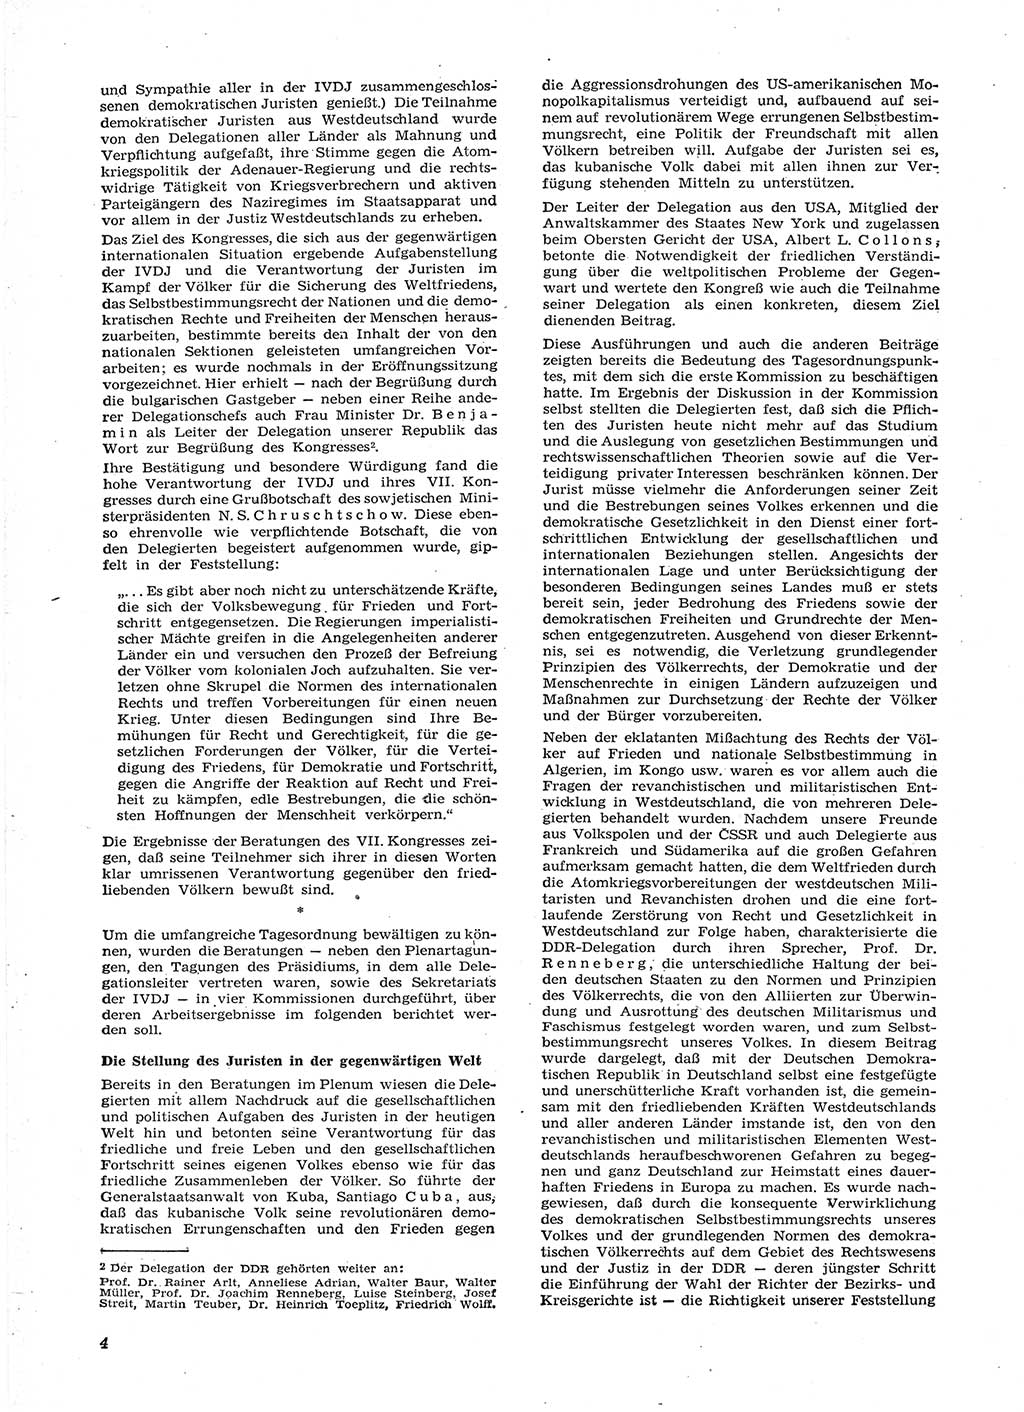 Neue Justiz (NJ), Zeitschrift für Recht und Rechtswissenschaft [Deutsche Demokratische Republik (DDR)], 15. Jahrgang 1961, Seite 4 (NJ DDR 1961, S. 4)